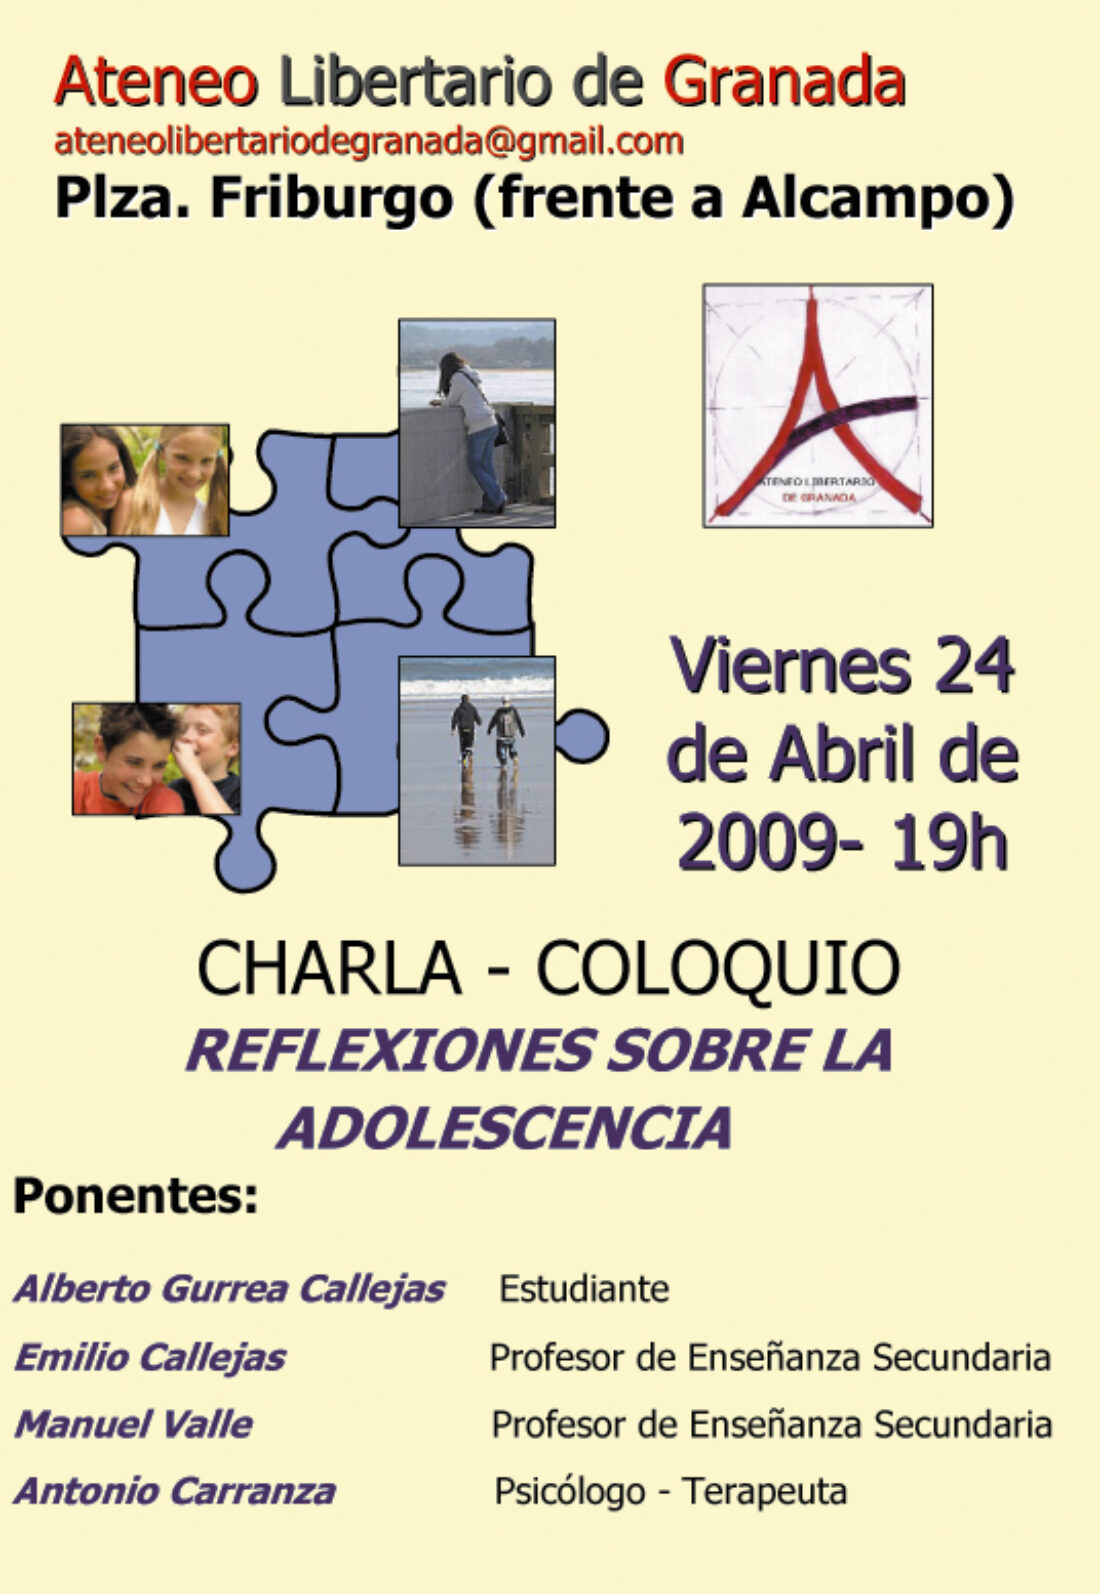 Ateneo Libertario de Granada : Charla-Coloquio «Reflexiones sobre la adolescencia»